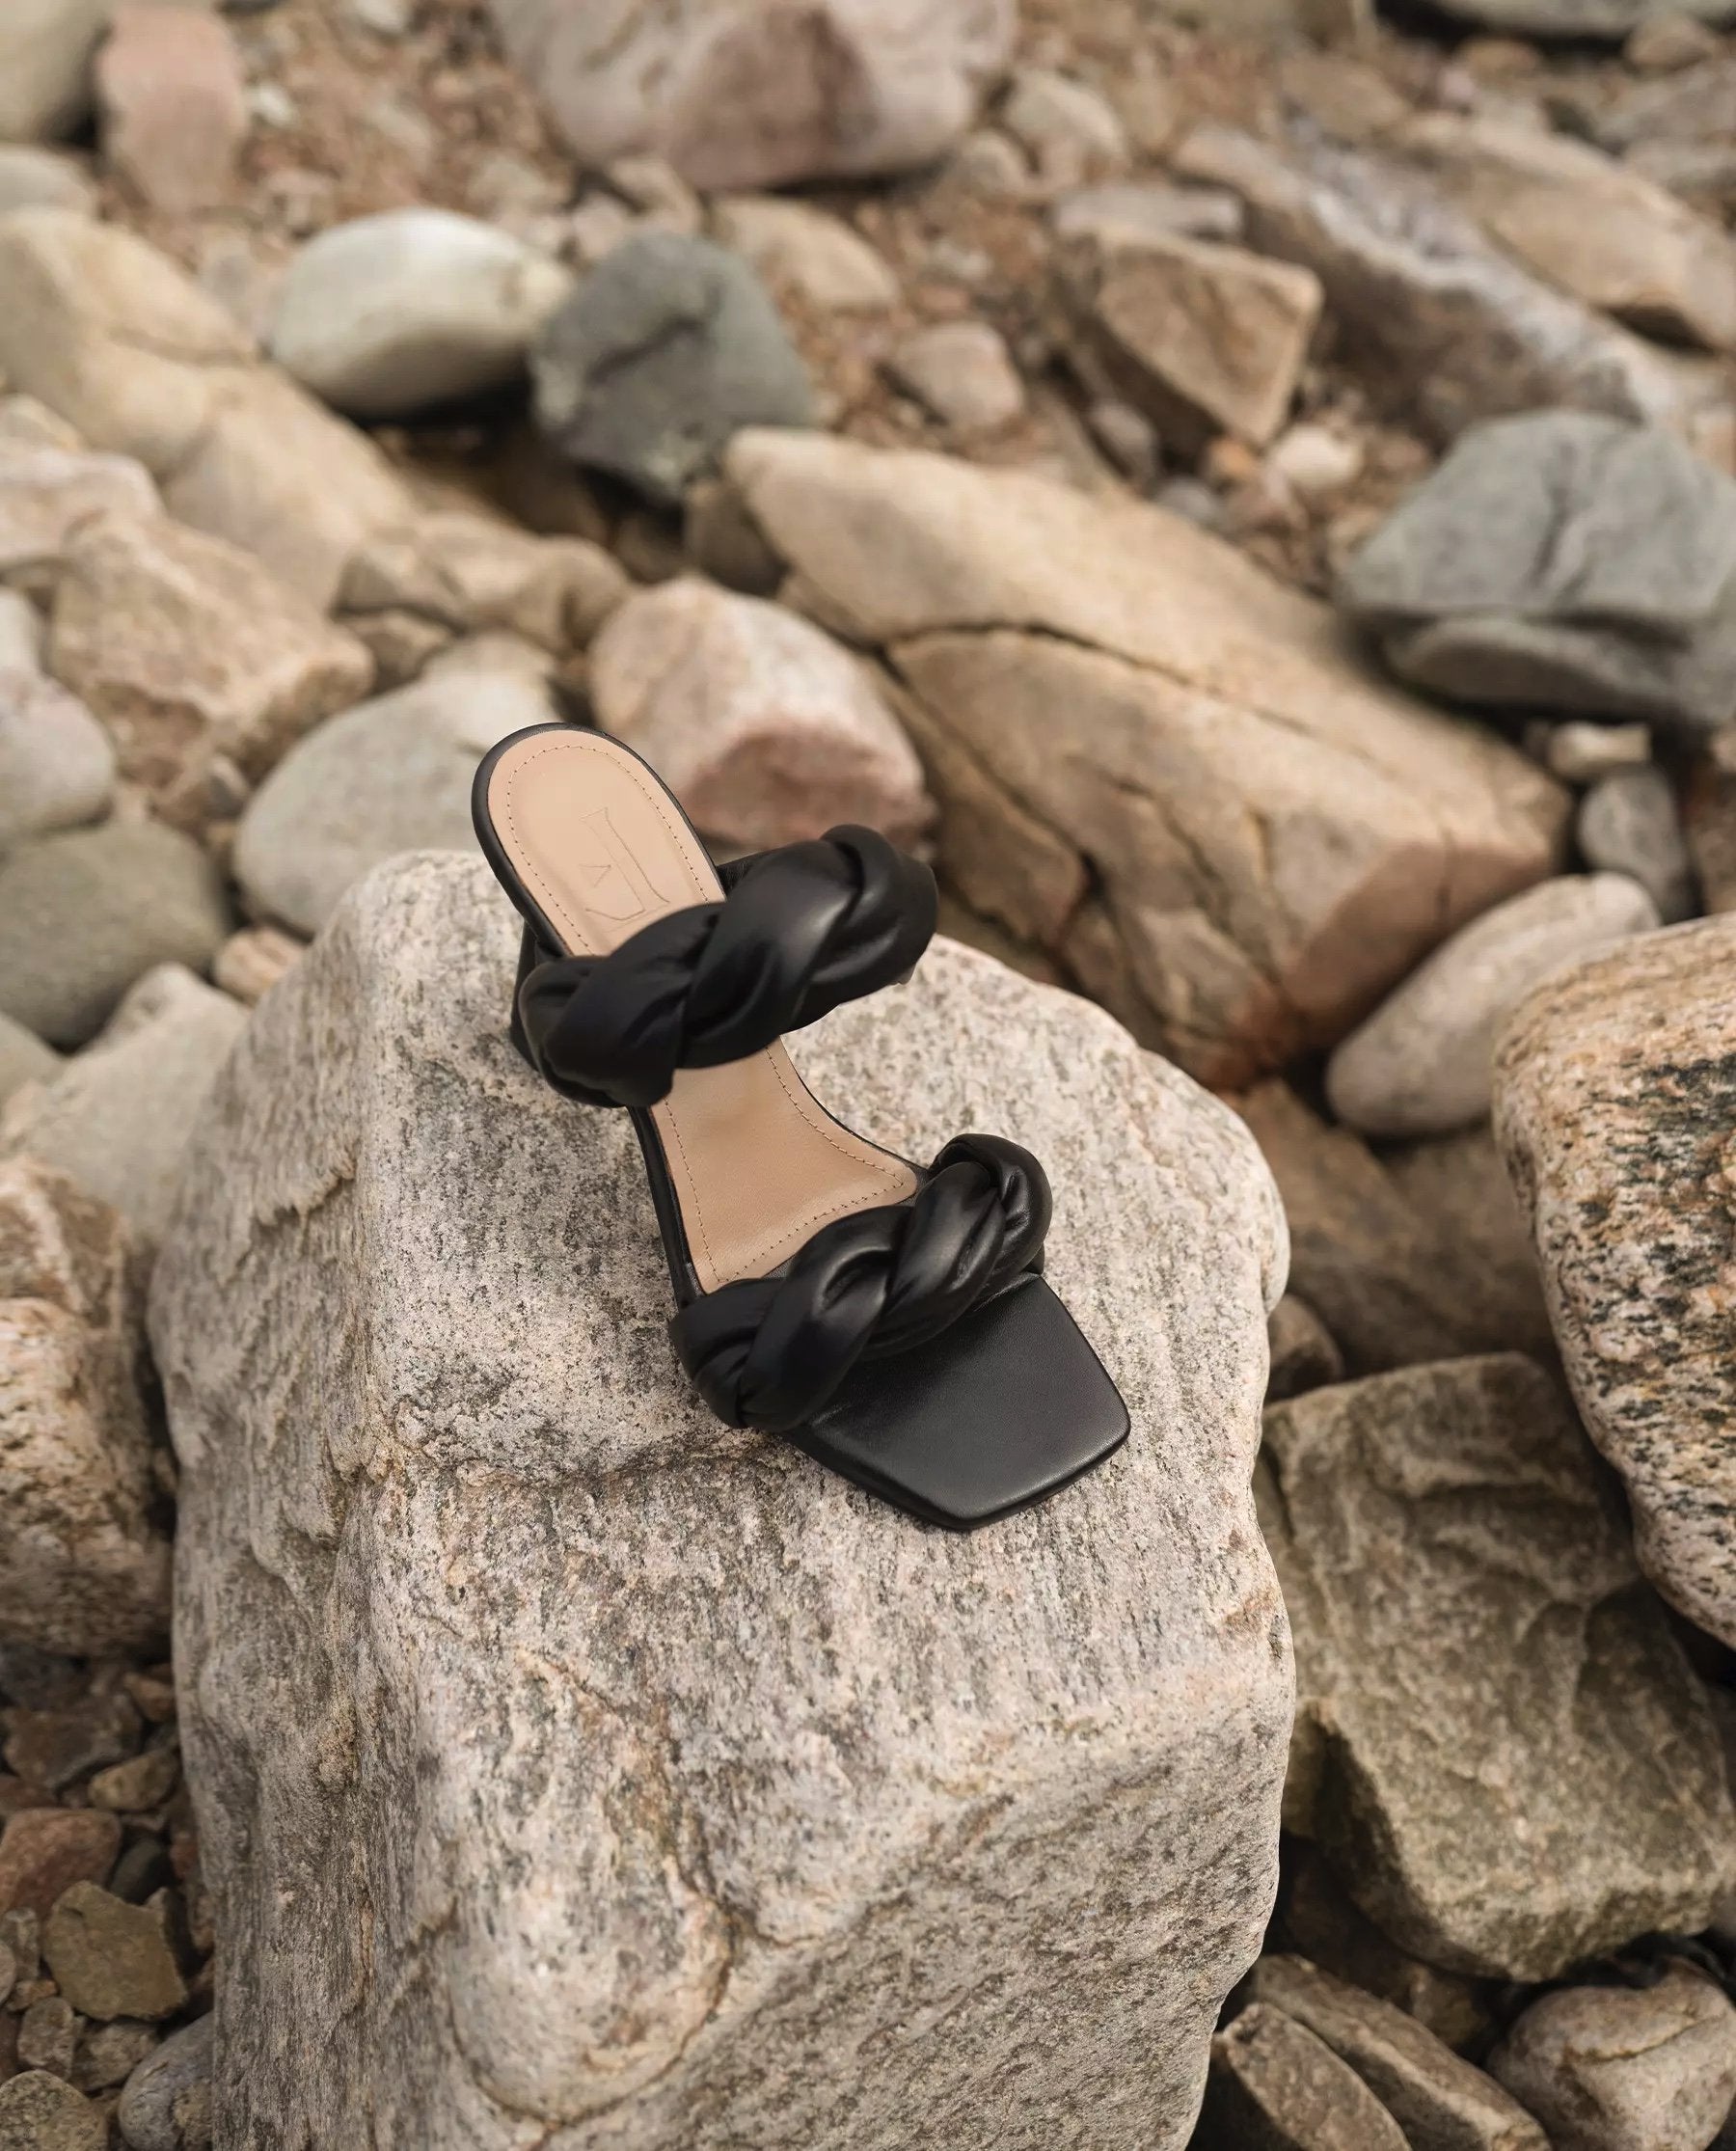 River Leather Black Heeled Sandals 21010416001-001 - 6